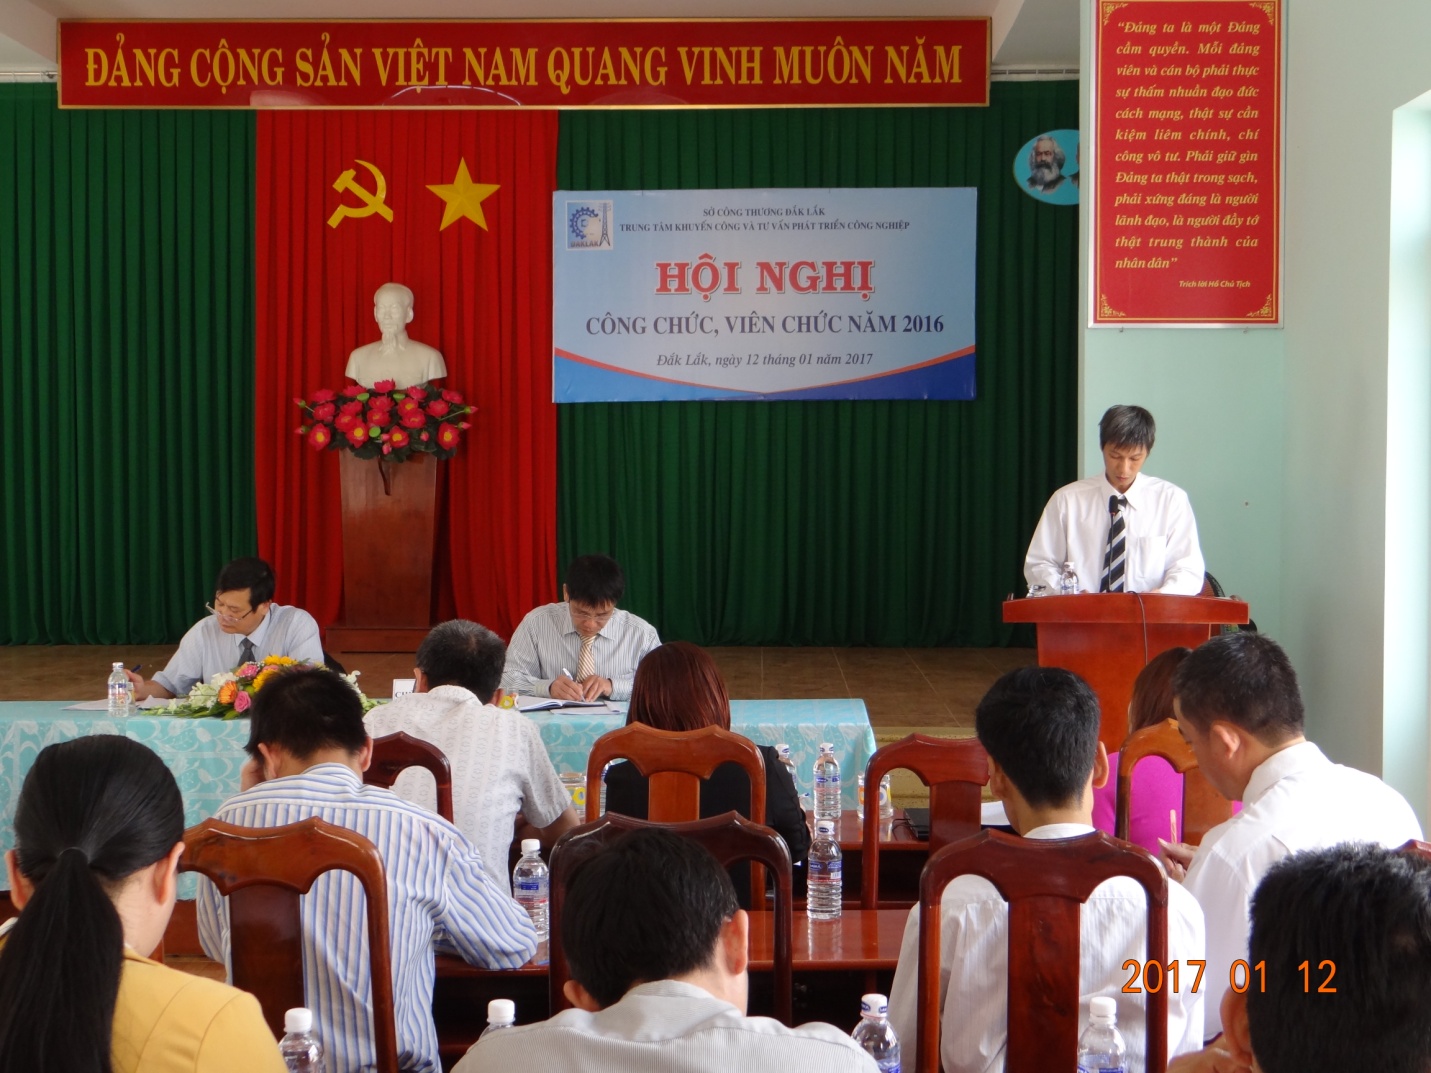 ông Phan Hữu Thành - PGĐ Trung tâm trình bày thảo báo cáo tổng kết nhiệm vụ chính trị năm 2016 và phương hướng hoạt động năm 2017